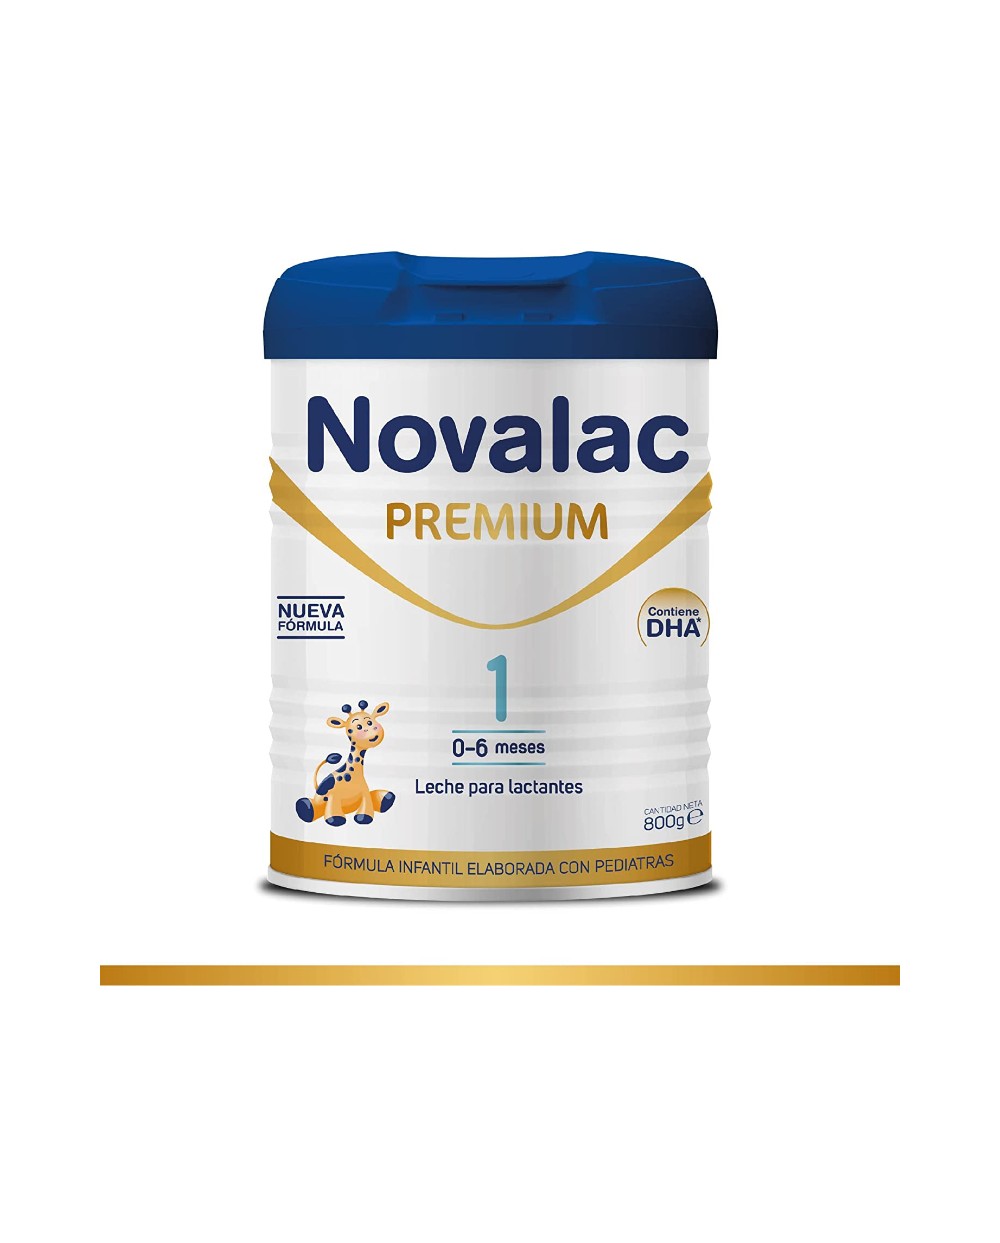 Novalac 1 Premium Leche Lactantes 800 Gr